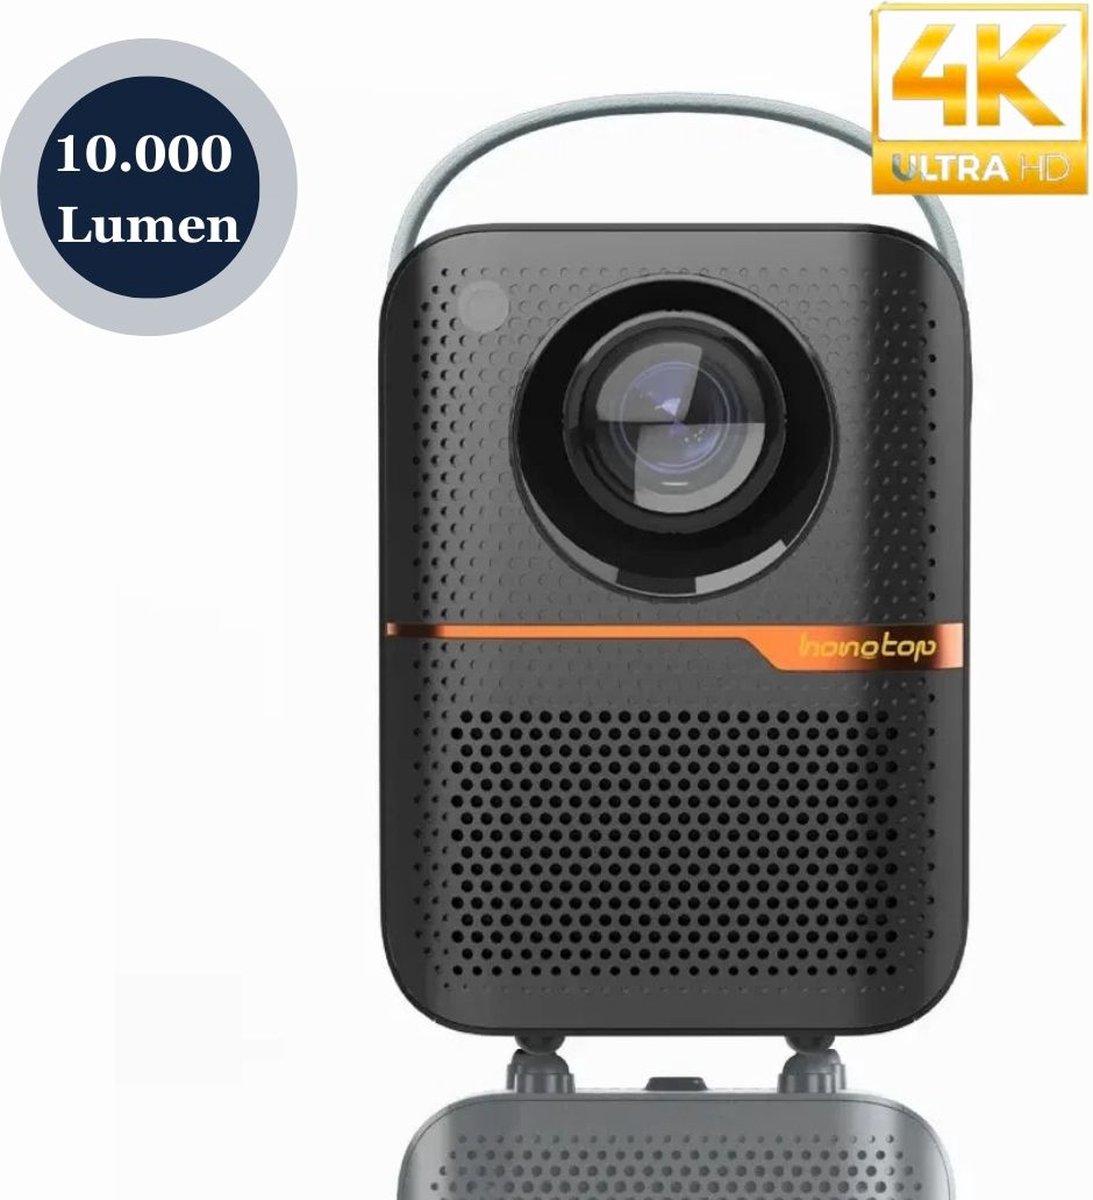 KoopKrachtig - Mini beamer - Draagbare beamer - Wifi/Bluetooth - 10.000 Lumen - 1080P/4K-ondersteuning - HD - Zwart - 4GB/64GB Opslag